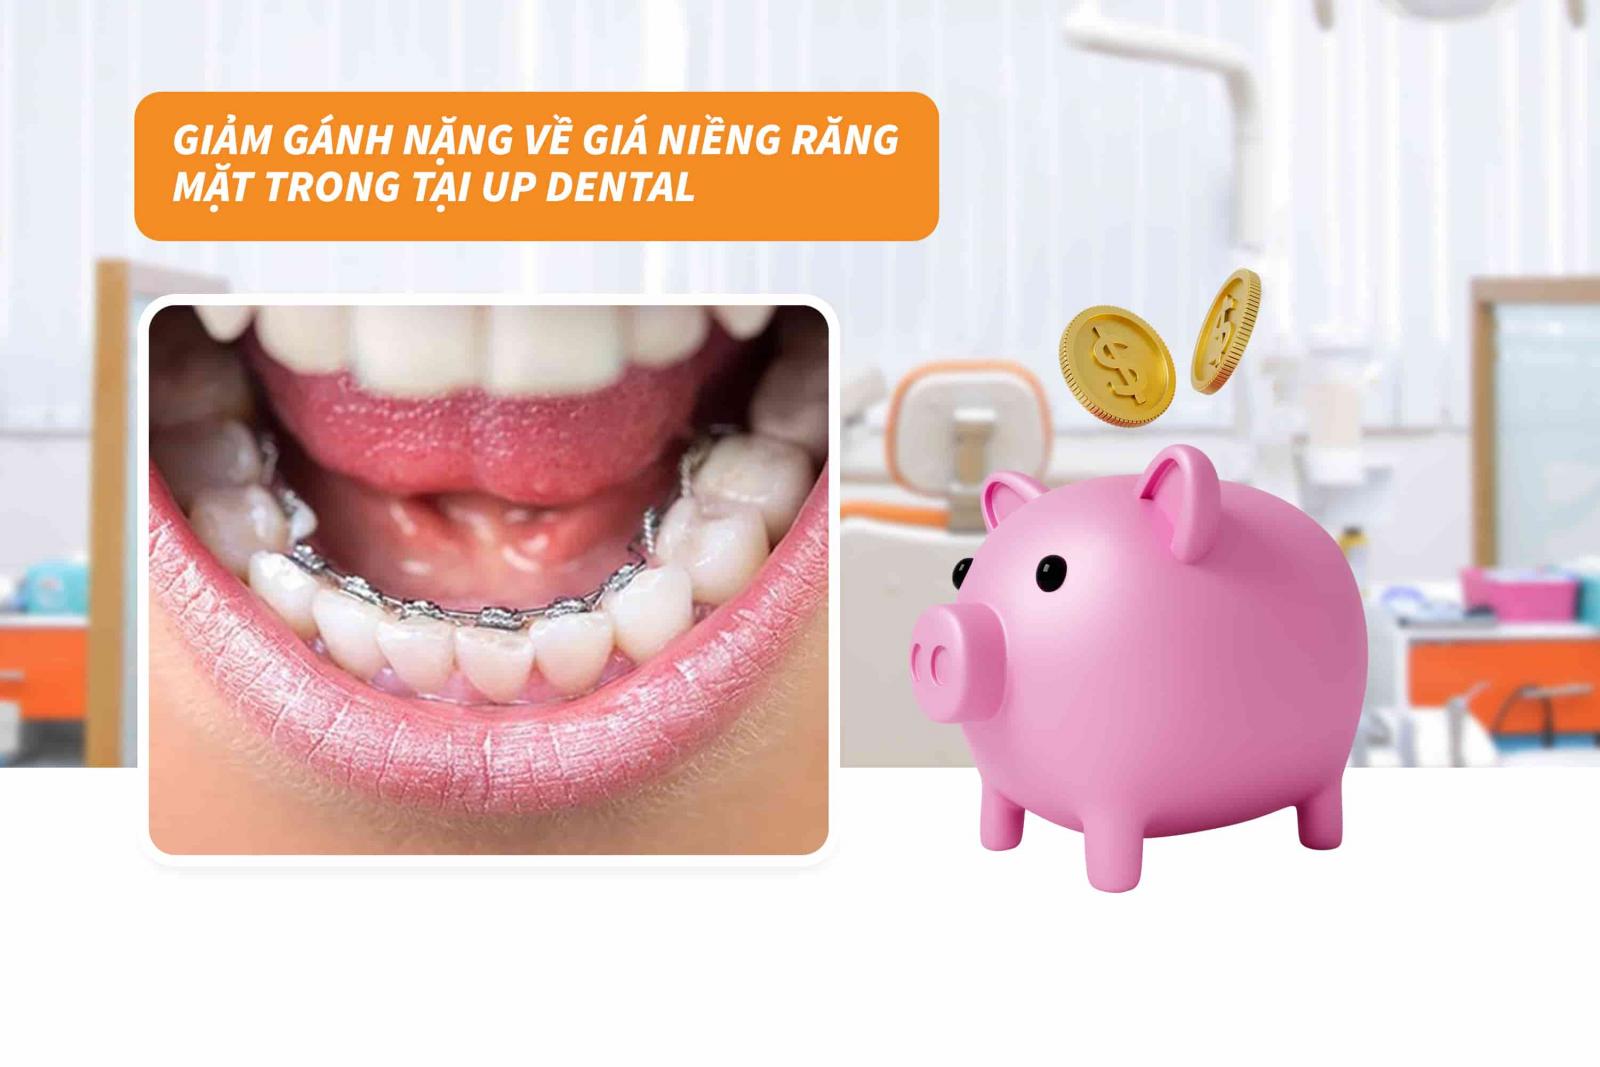 Giảm gánh nặng về giá niềng răng mặt trong tại Up Dental